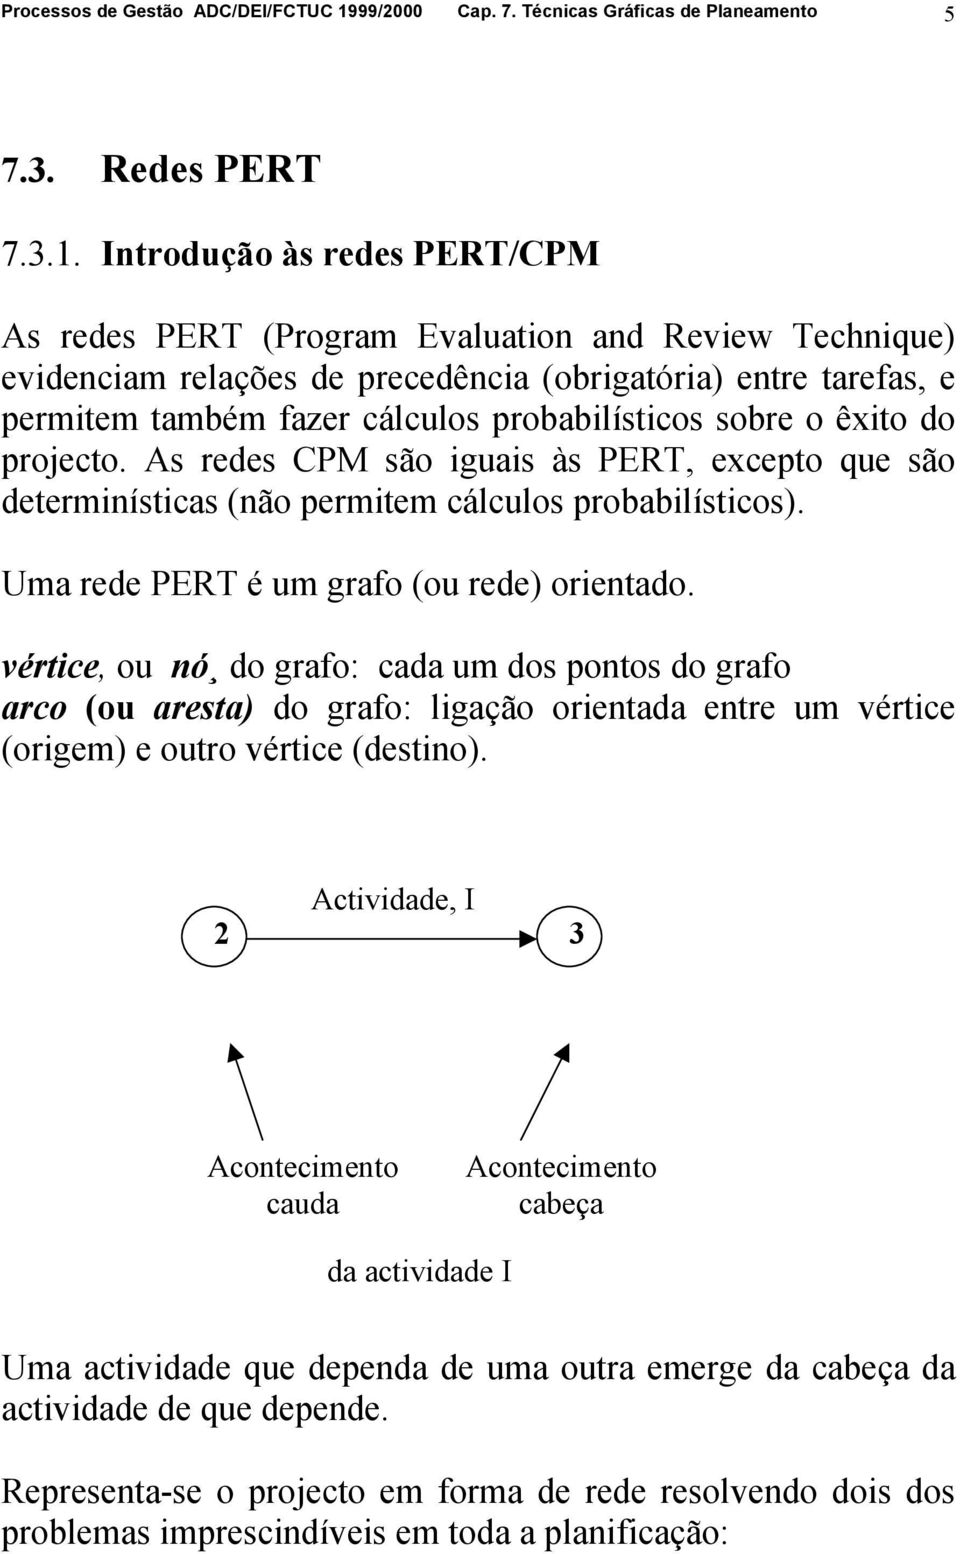 Introdução às redes PERT/CPM As redes PERT (Program Evaluation and Review Technique) evidenciam relações de precedência (obrigatória) entre tarefas, e permitem também fazer cálculos probabilísticos